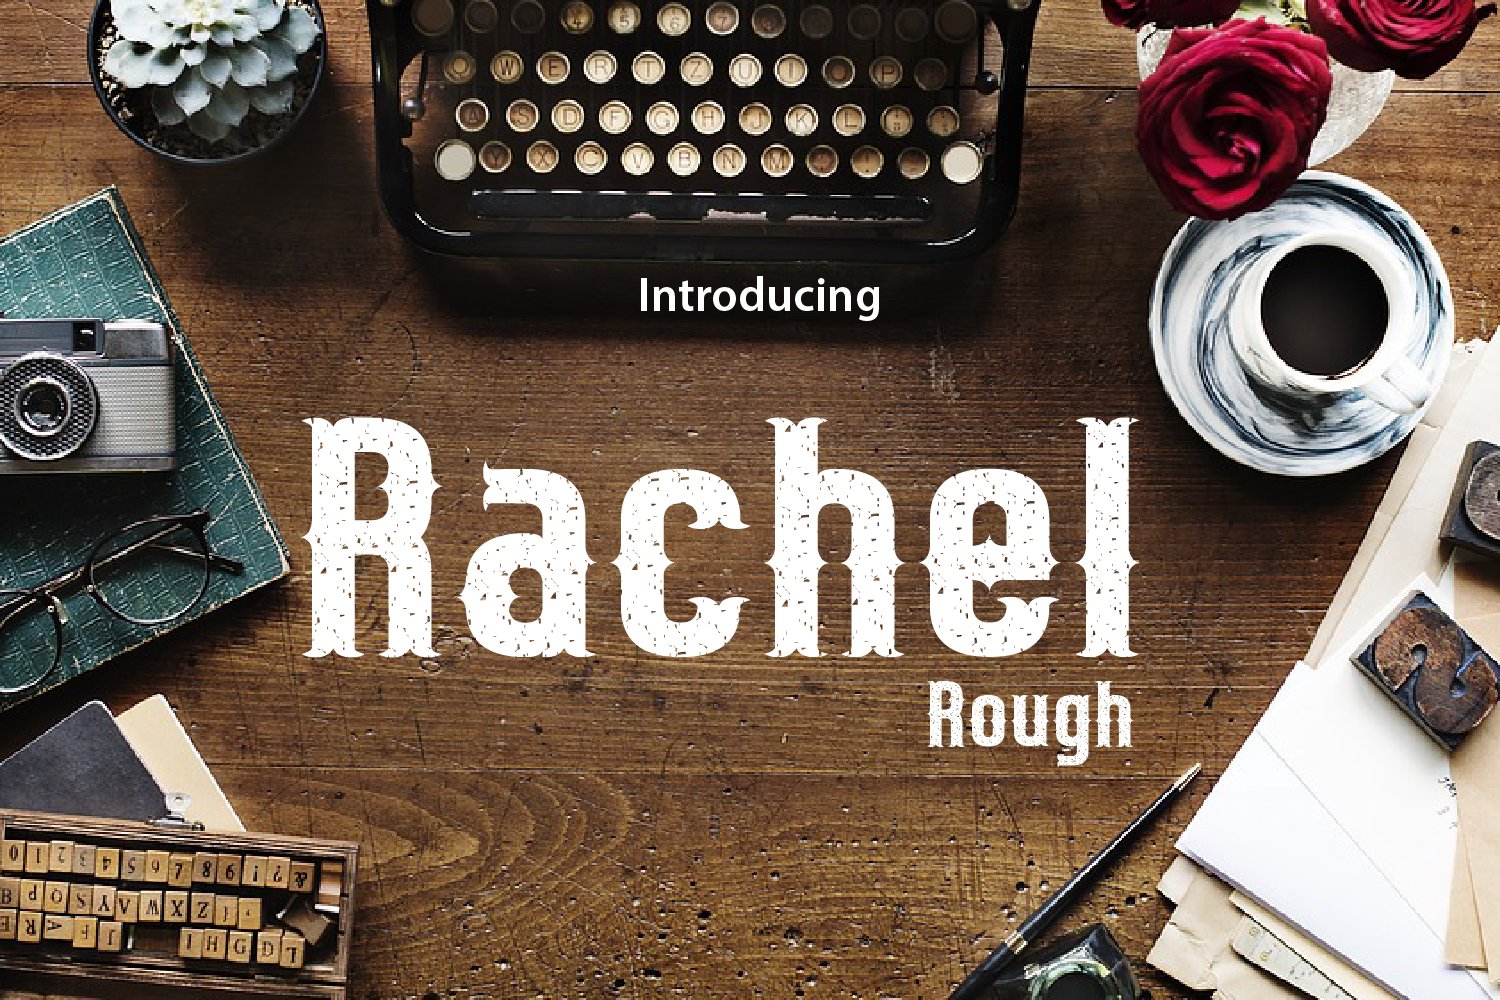 Rachel Rough preview image.